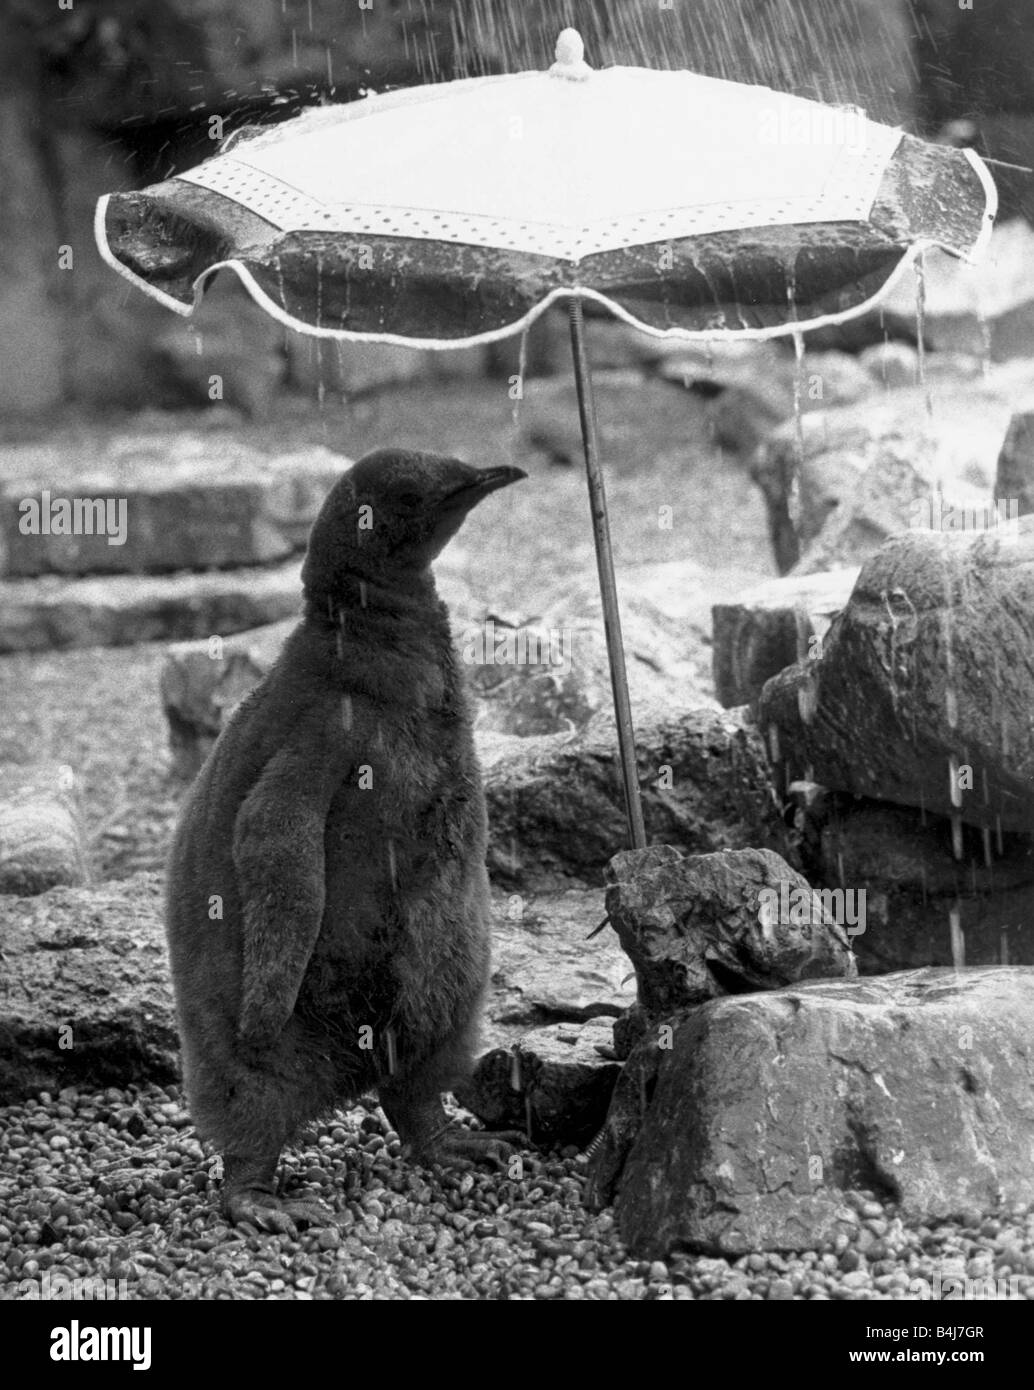 Pengy die erste Königspinguin geboren im Zoo von Bristol für zehn Jahre Hasn t dazugekommen, die wasserdichte Gefieder wachsen, das schützen Stockfoto